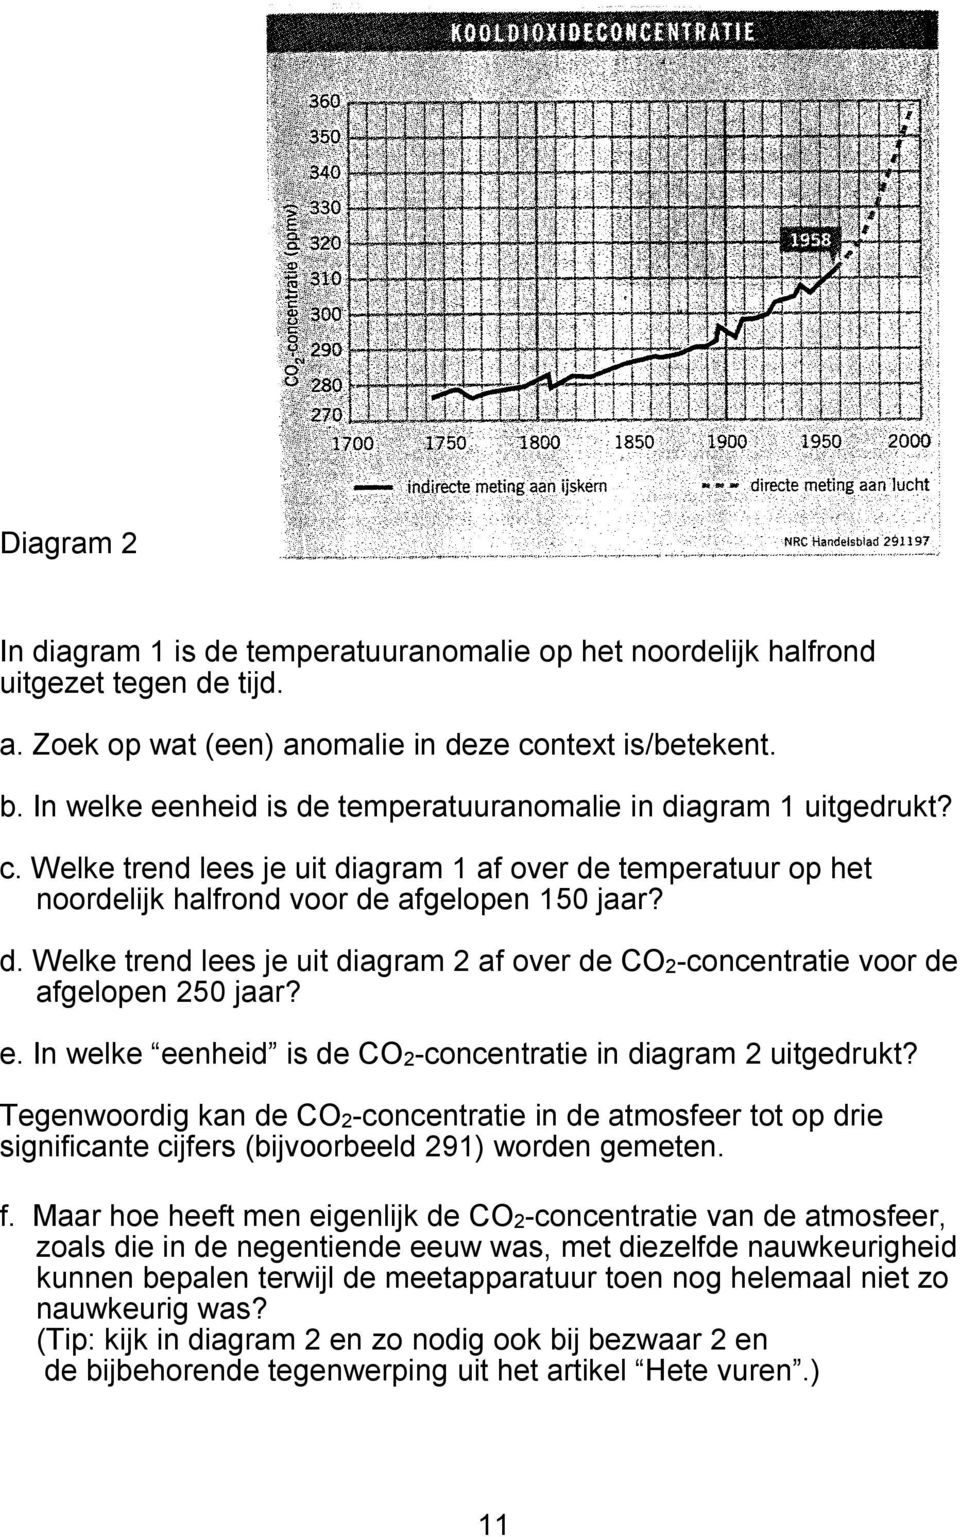 e. In welke eenheid is de CO2-concentratie in diagram 2 uitgedrukt? Tegenwoordig kan de CO2-concentratie in de atmosfeer tot op drie significante cijfers (bijvoorbeeld 291) worden gemeten. f.